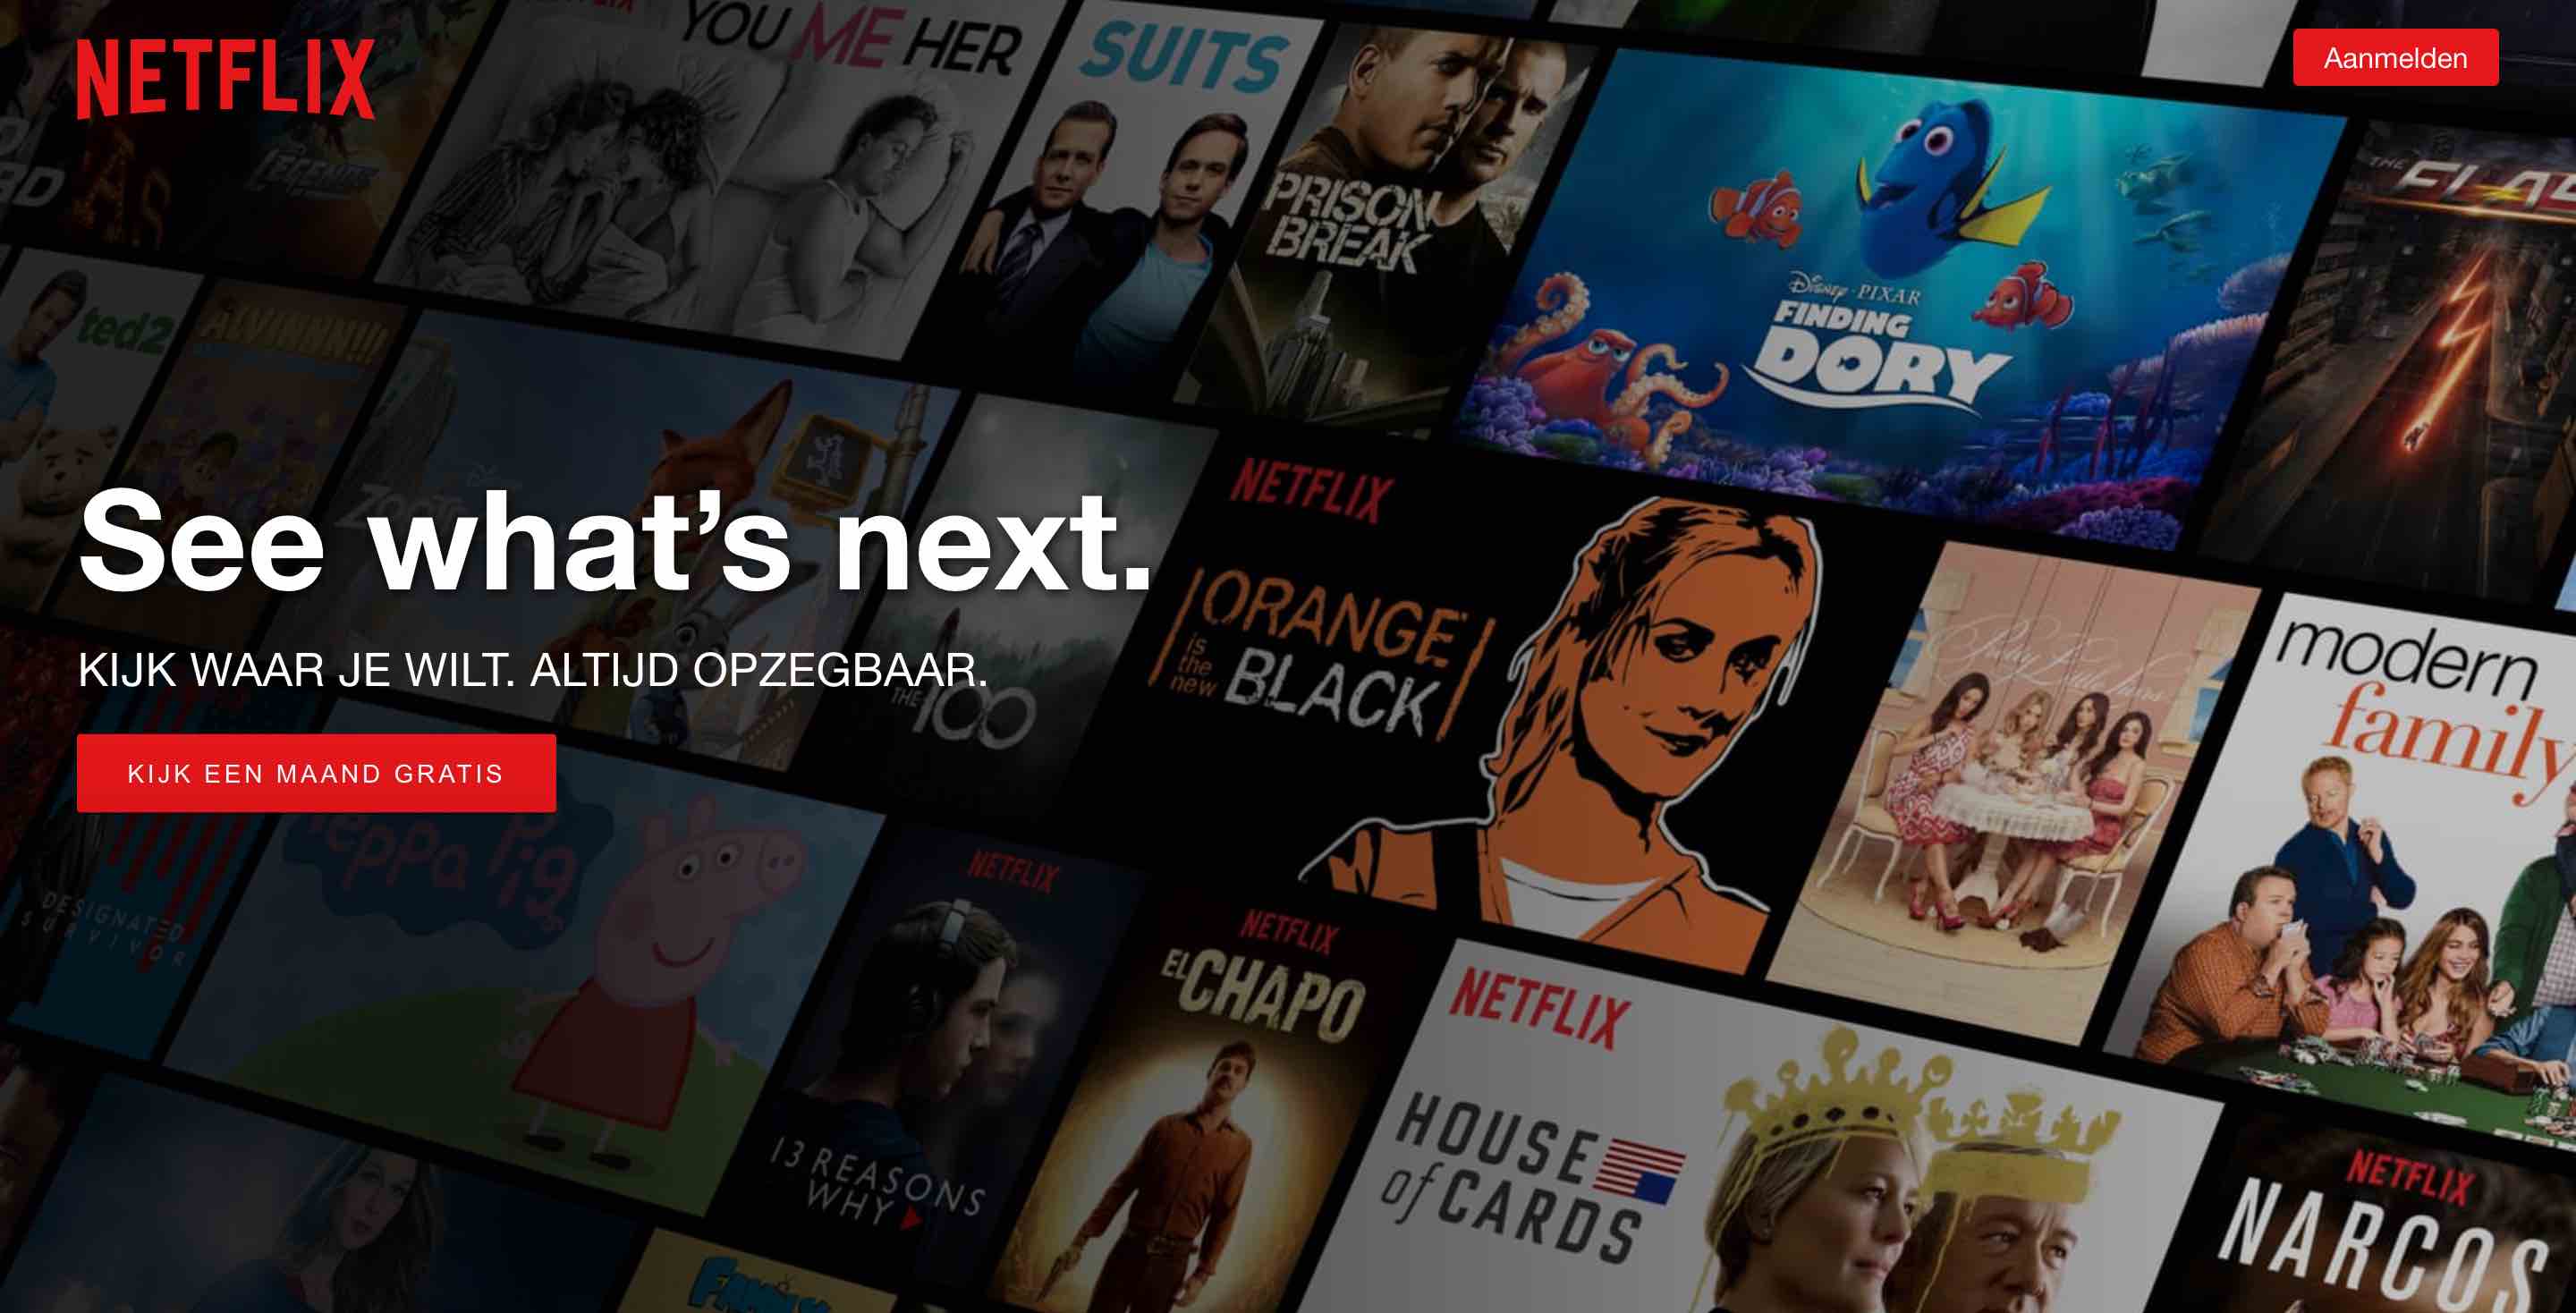 Netflix wil alle nieuwe bezoekers een free trial af laten nemen van hun dienst.